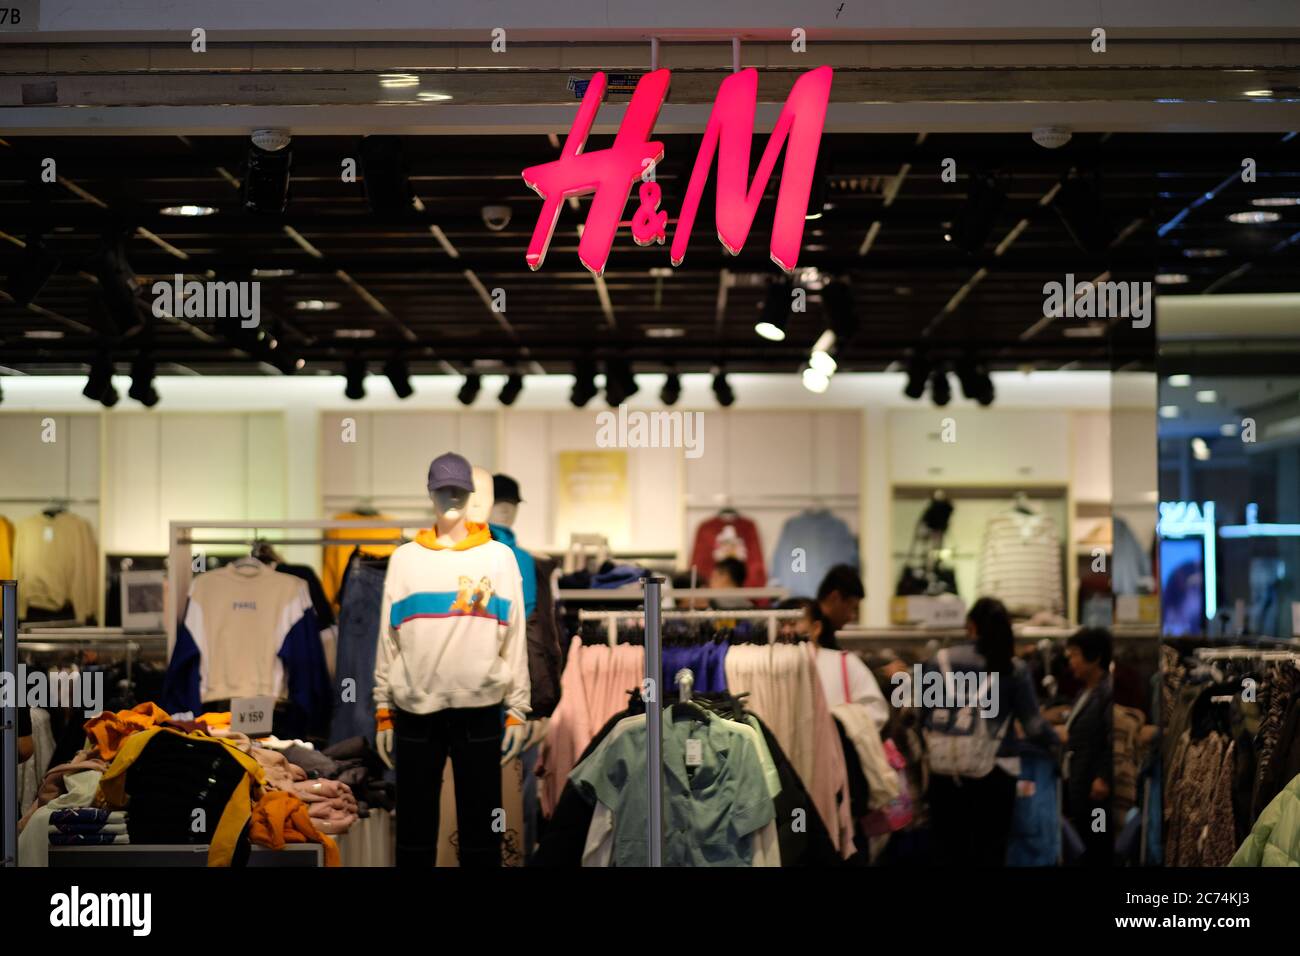 Fachada de la tienda de ropa H&M. Logotipo rojo brillante colgado en la entrada. Desenfoca la tienda de ropa y los clientes como fondo. Una Marca de moda sueca Fotografía de stock